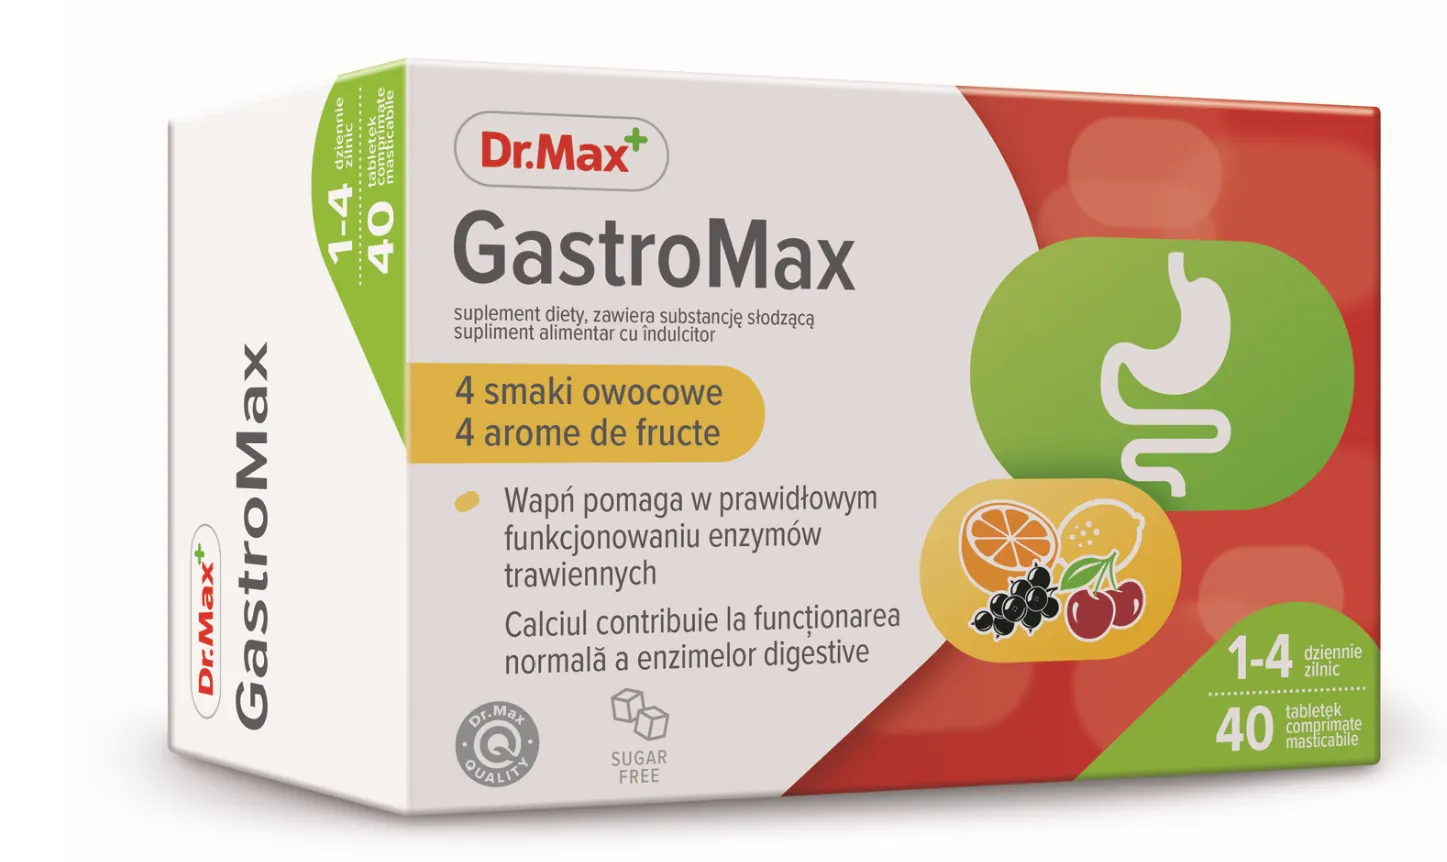 Dr.Max GastroMax, 40 comprimate masticabile